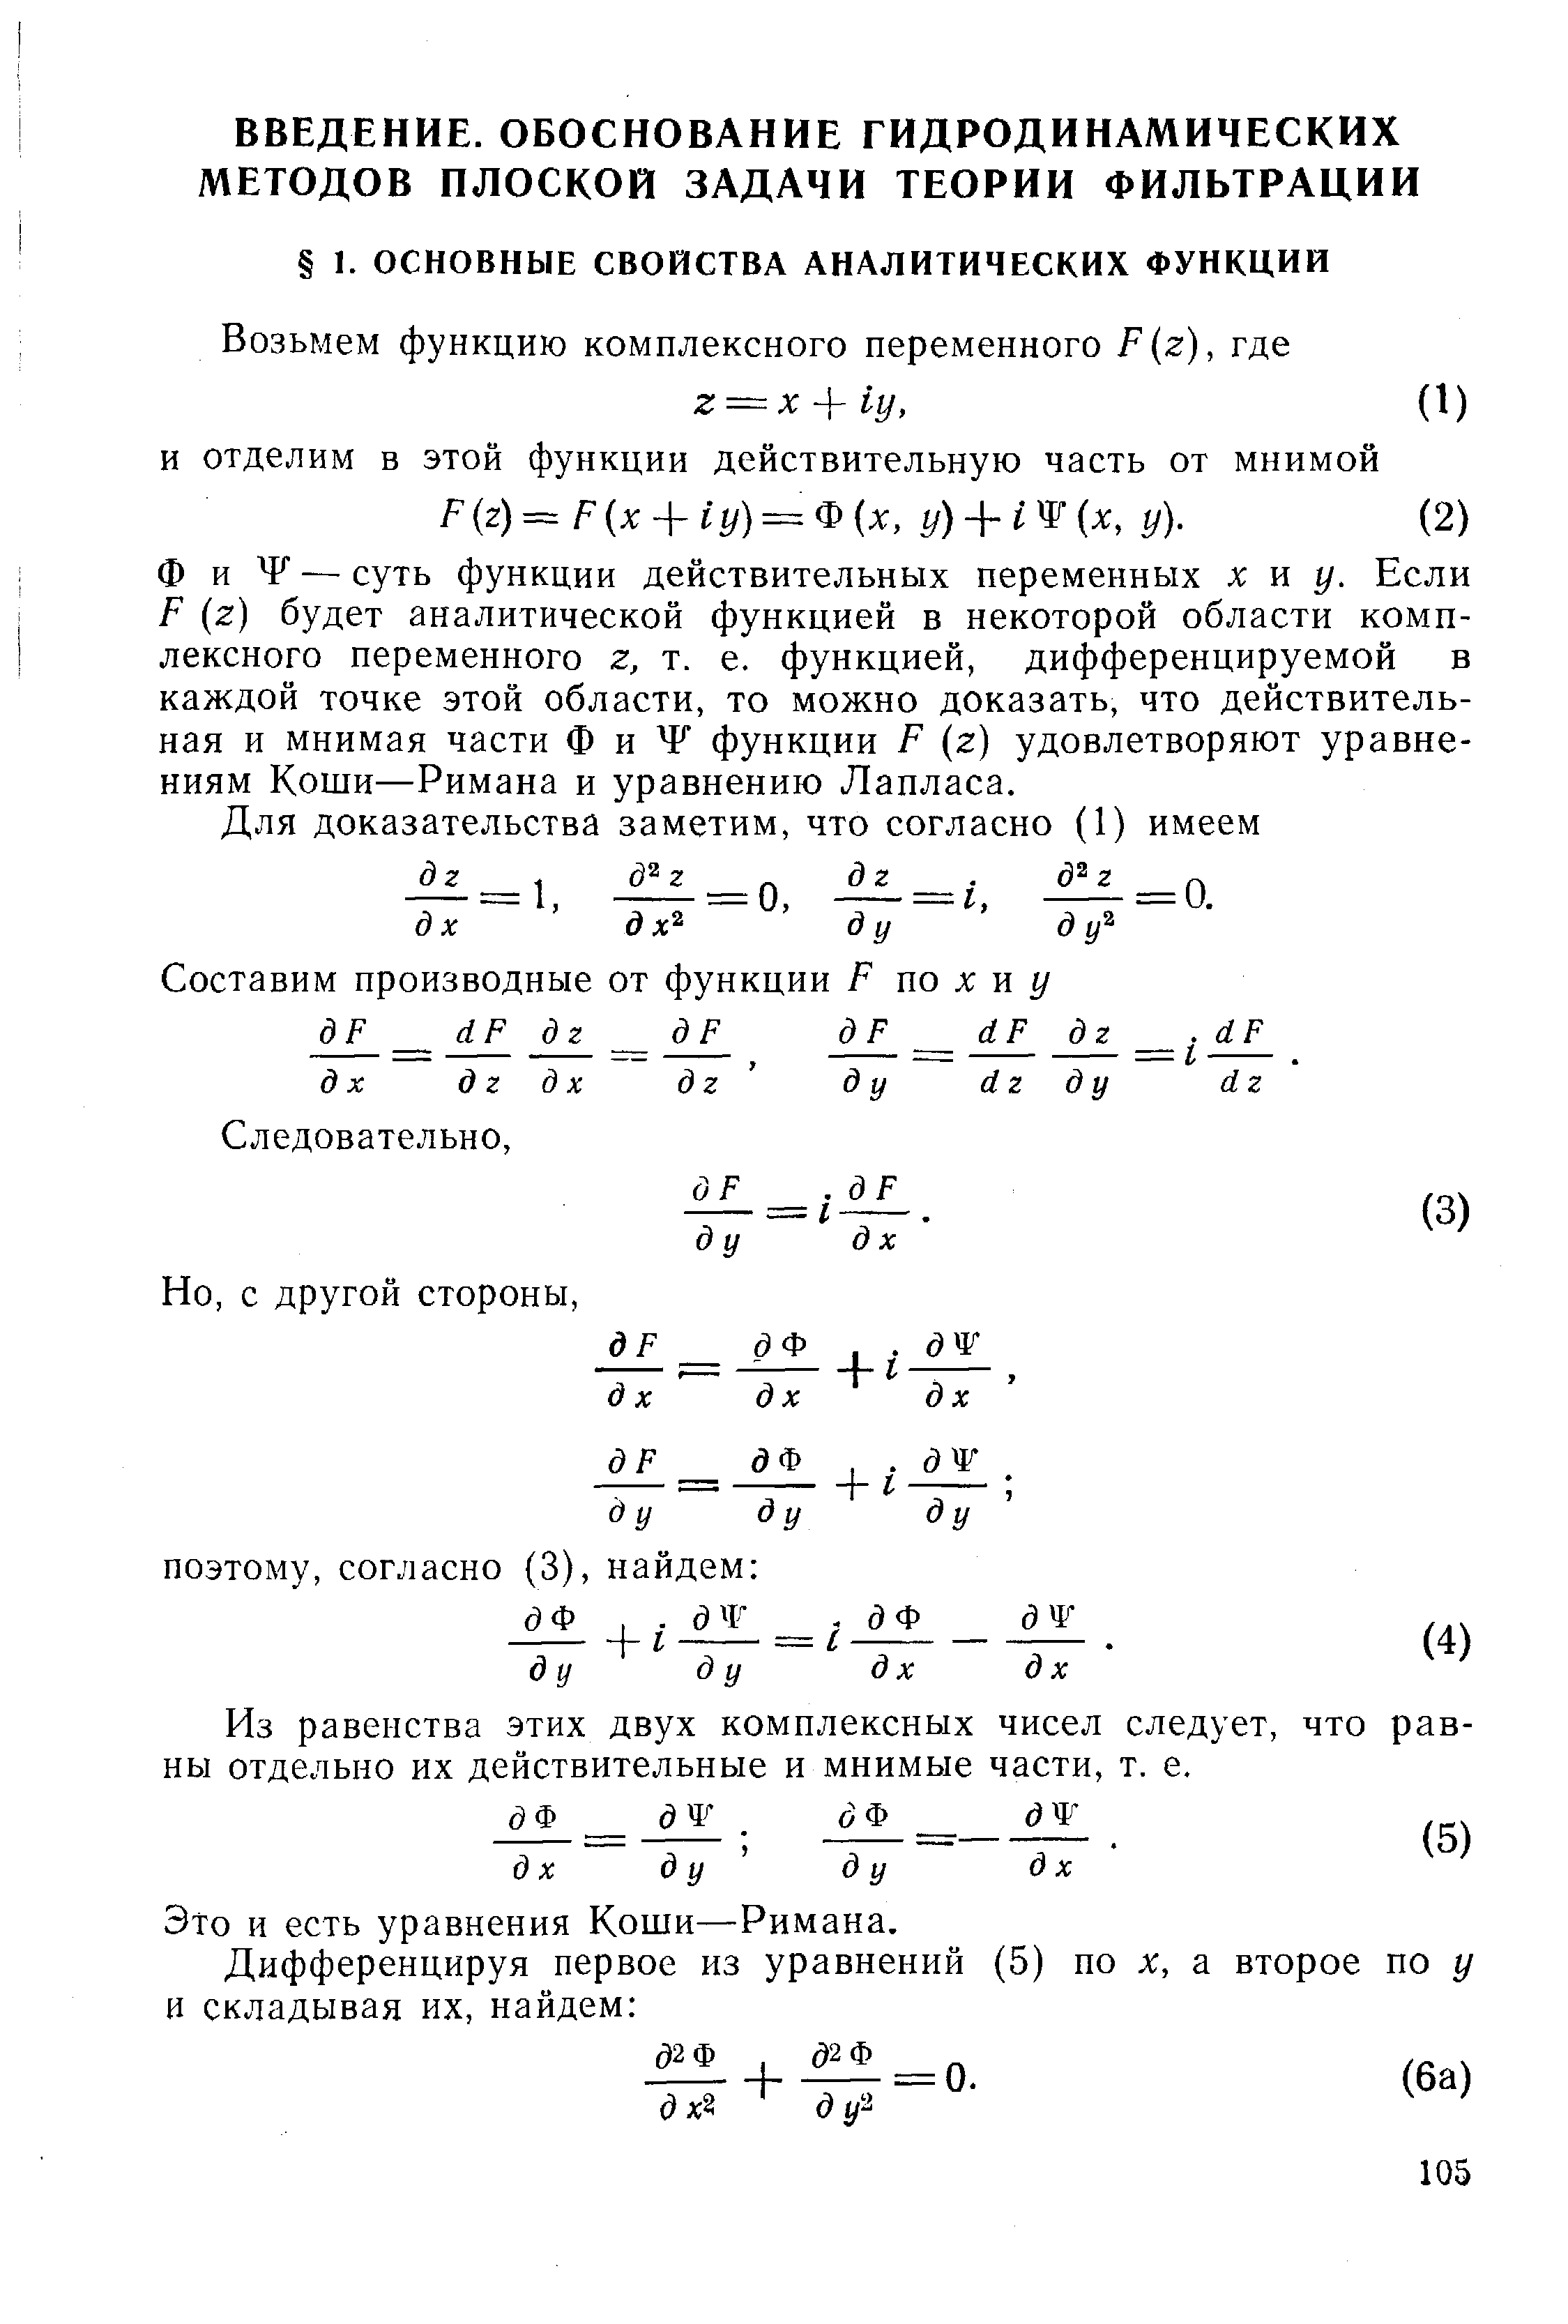 Ф и Ч — суть функции действительных переменных х и у. Если Р (г) будет аналитической функцией в некоторой области комплексного переменного г, т. е. функцией, дифференцируемой в каждой точке этой области, то можно доказать, что действительная и мнимая части ф и Ч функции Р (г) удовлетворяют уравнениям Коши—Римана и уравнению Лапласа.